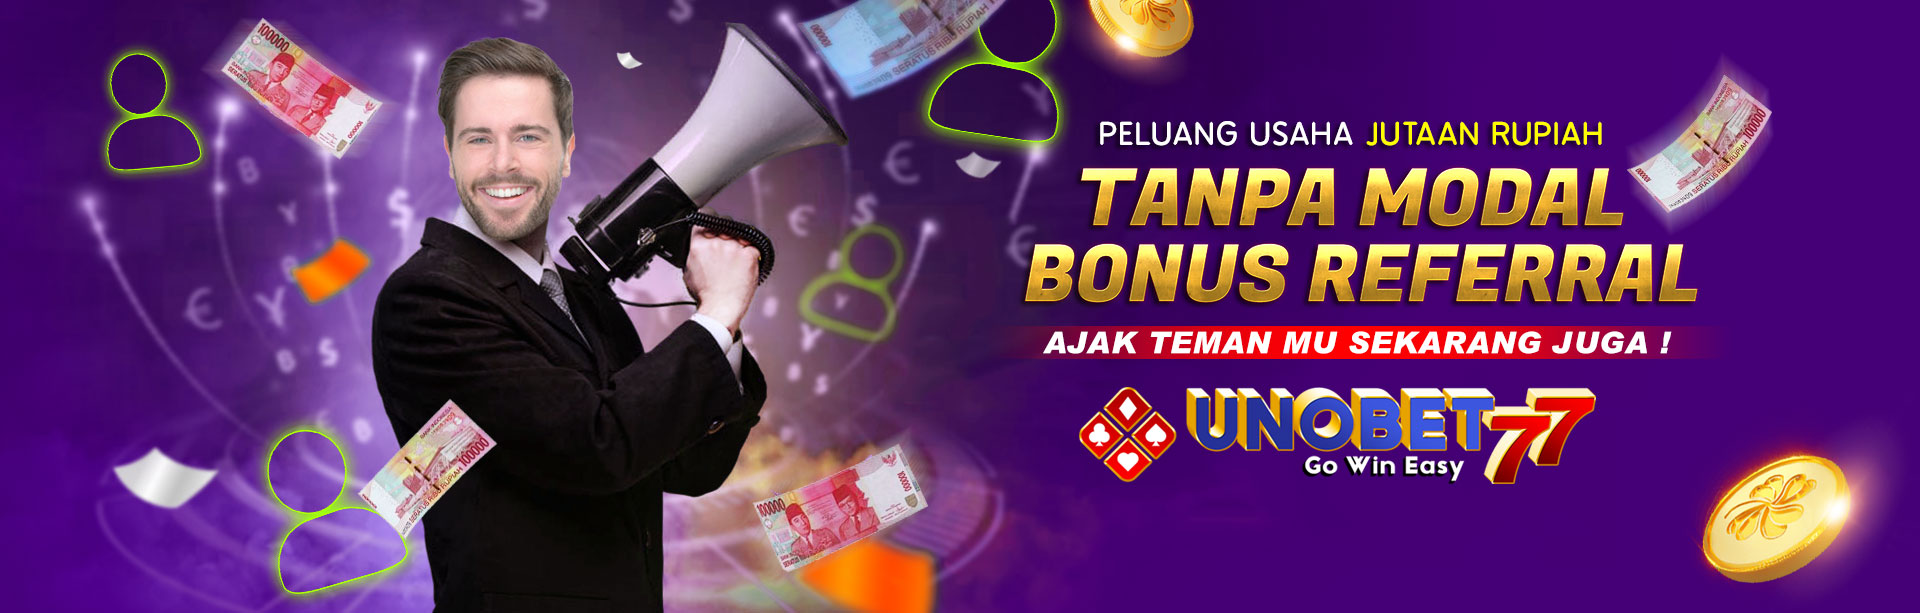 Bonus Member Refferal Situs Judi Online Indonesia UNOBET77